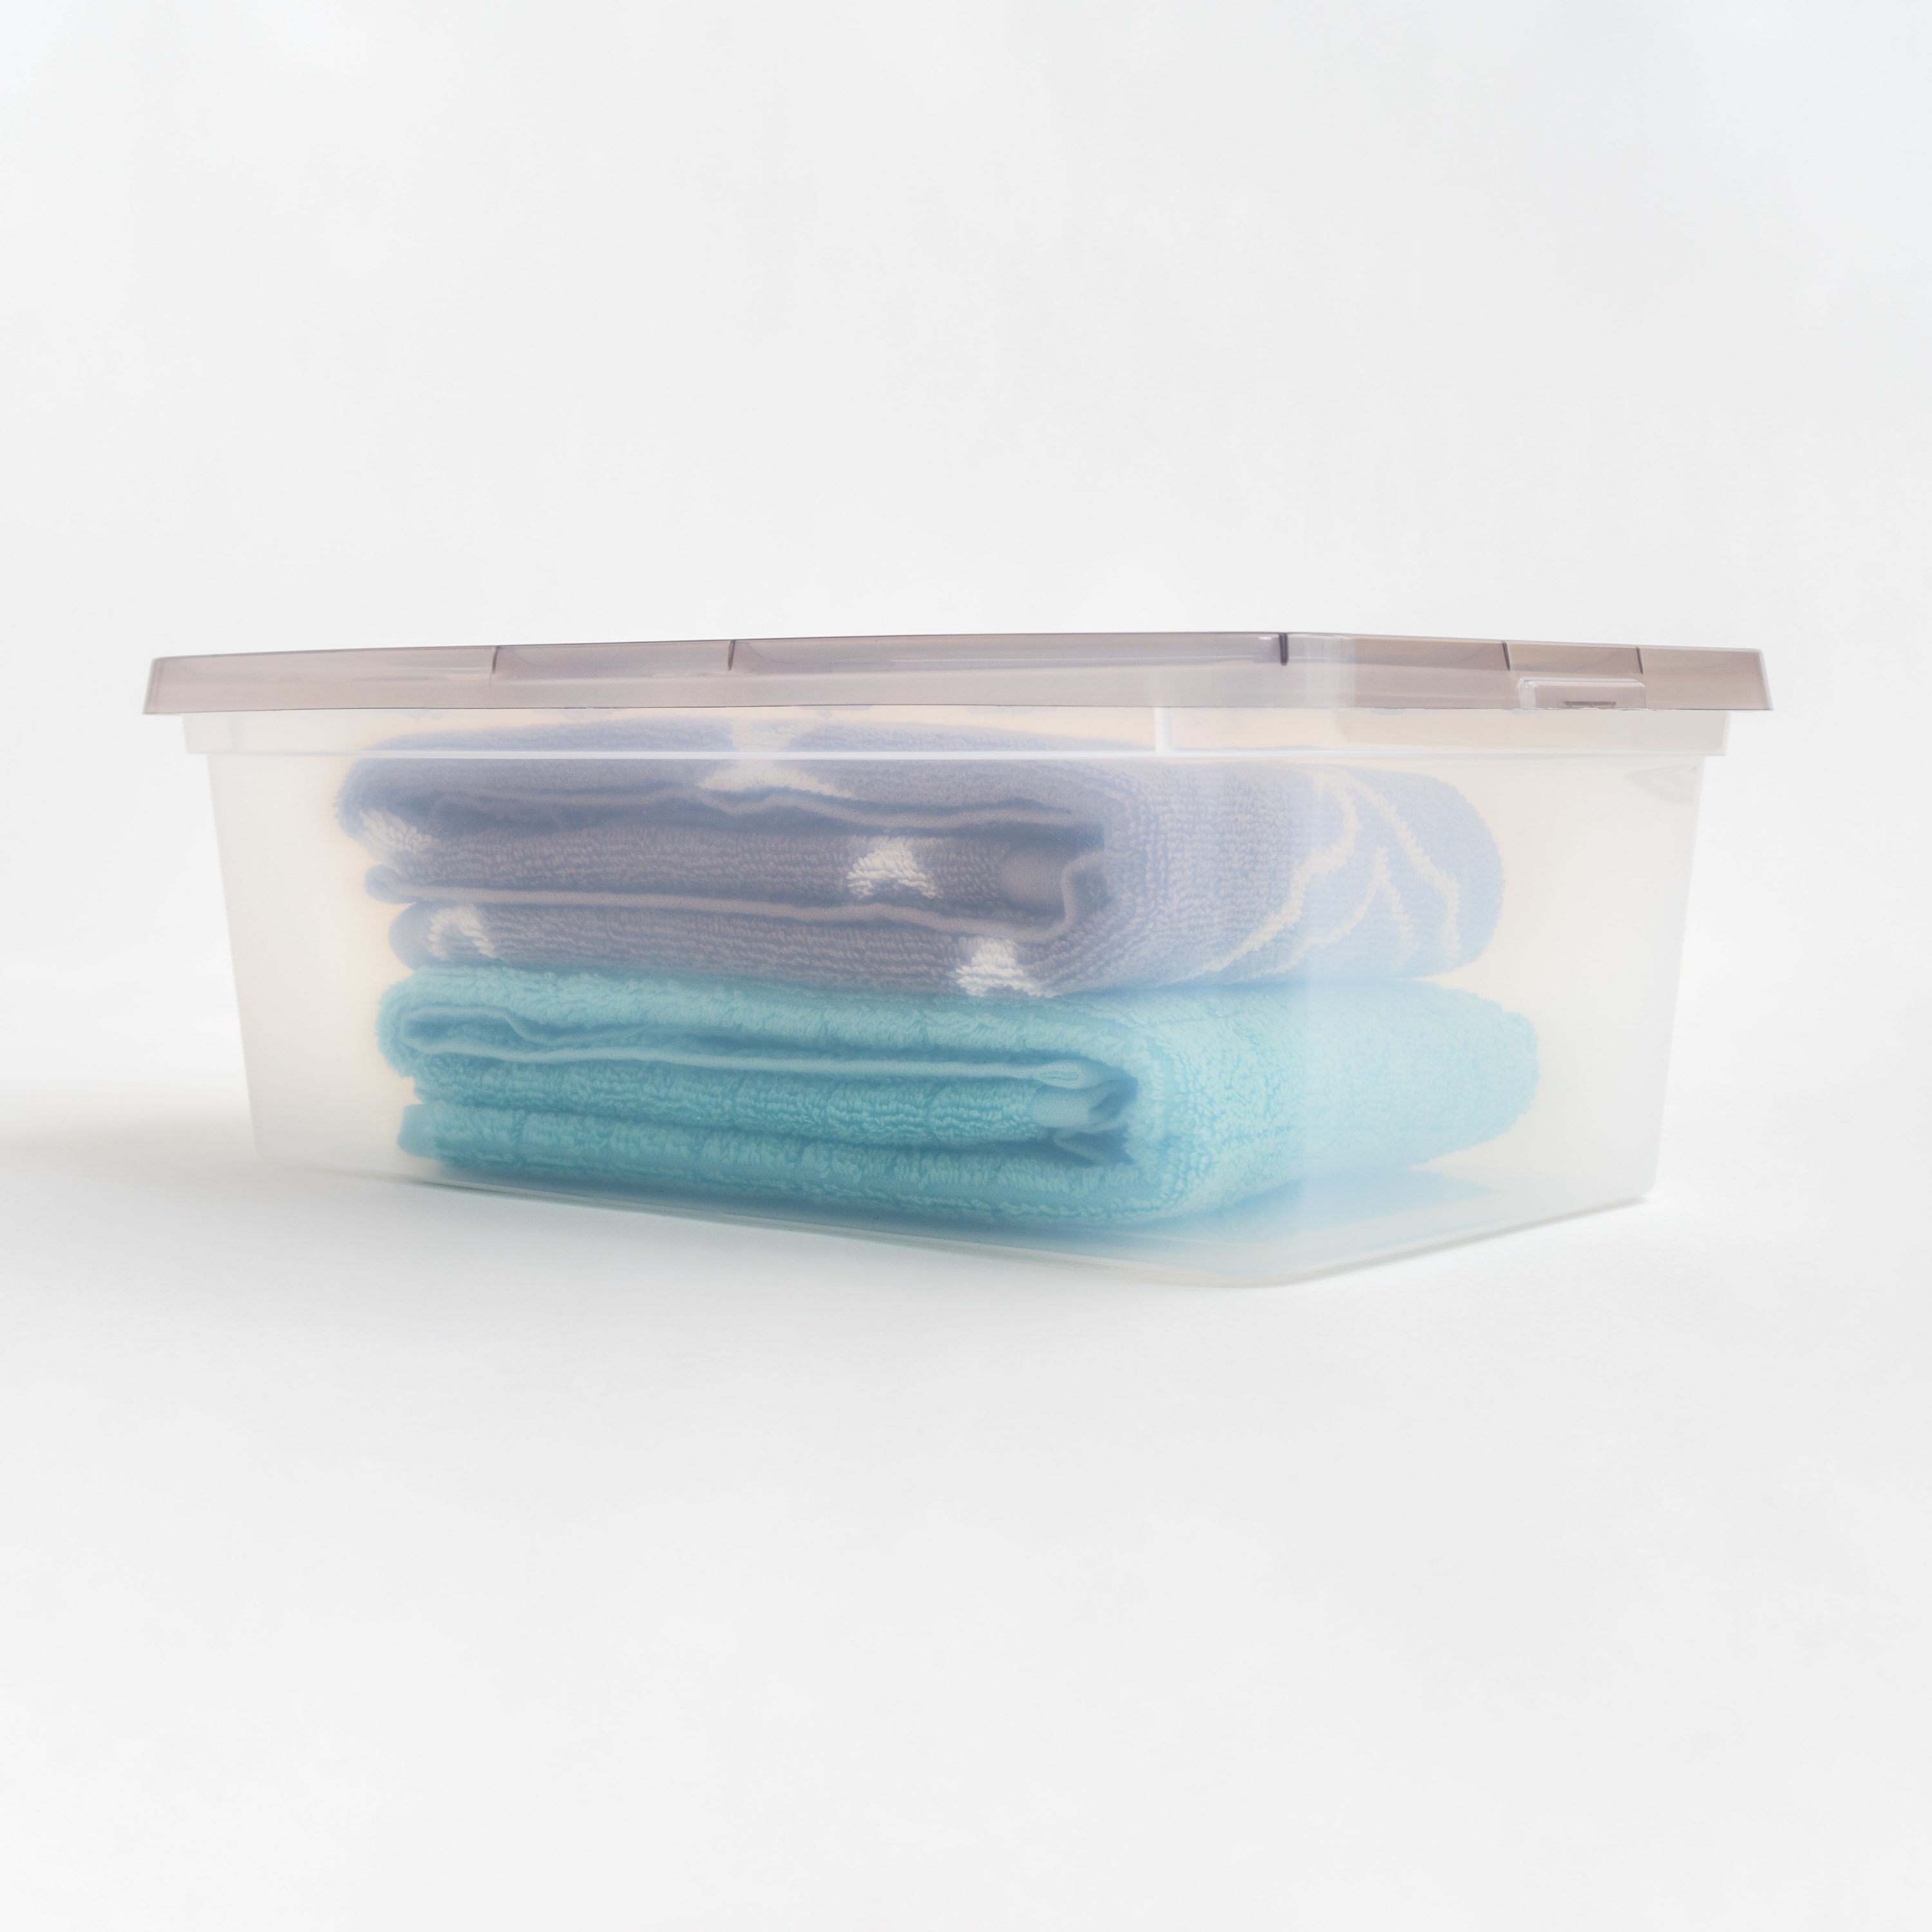 6 Pack Small Plastic Storage Bins (10.2 x 7.3 x 3.9 in)